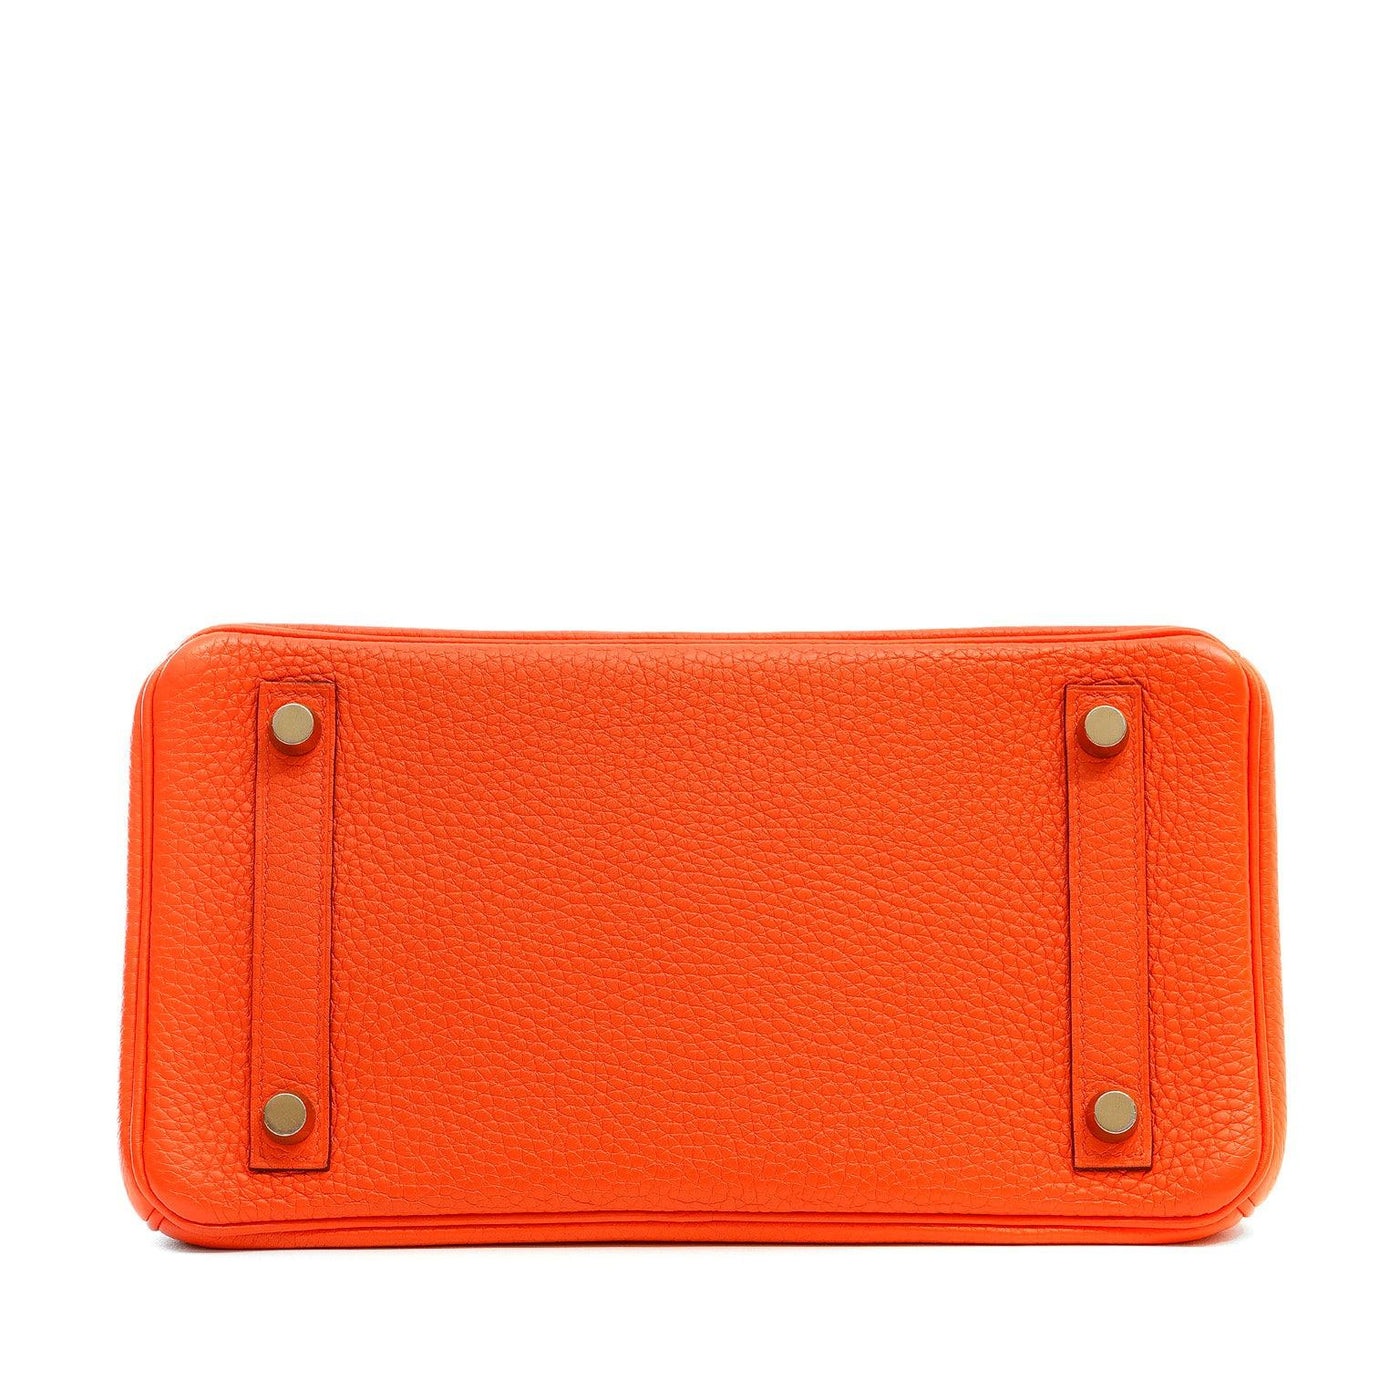 Hermès 25cm Poppy Orange Togo Birkin with Gold Hardware - Only Authentics